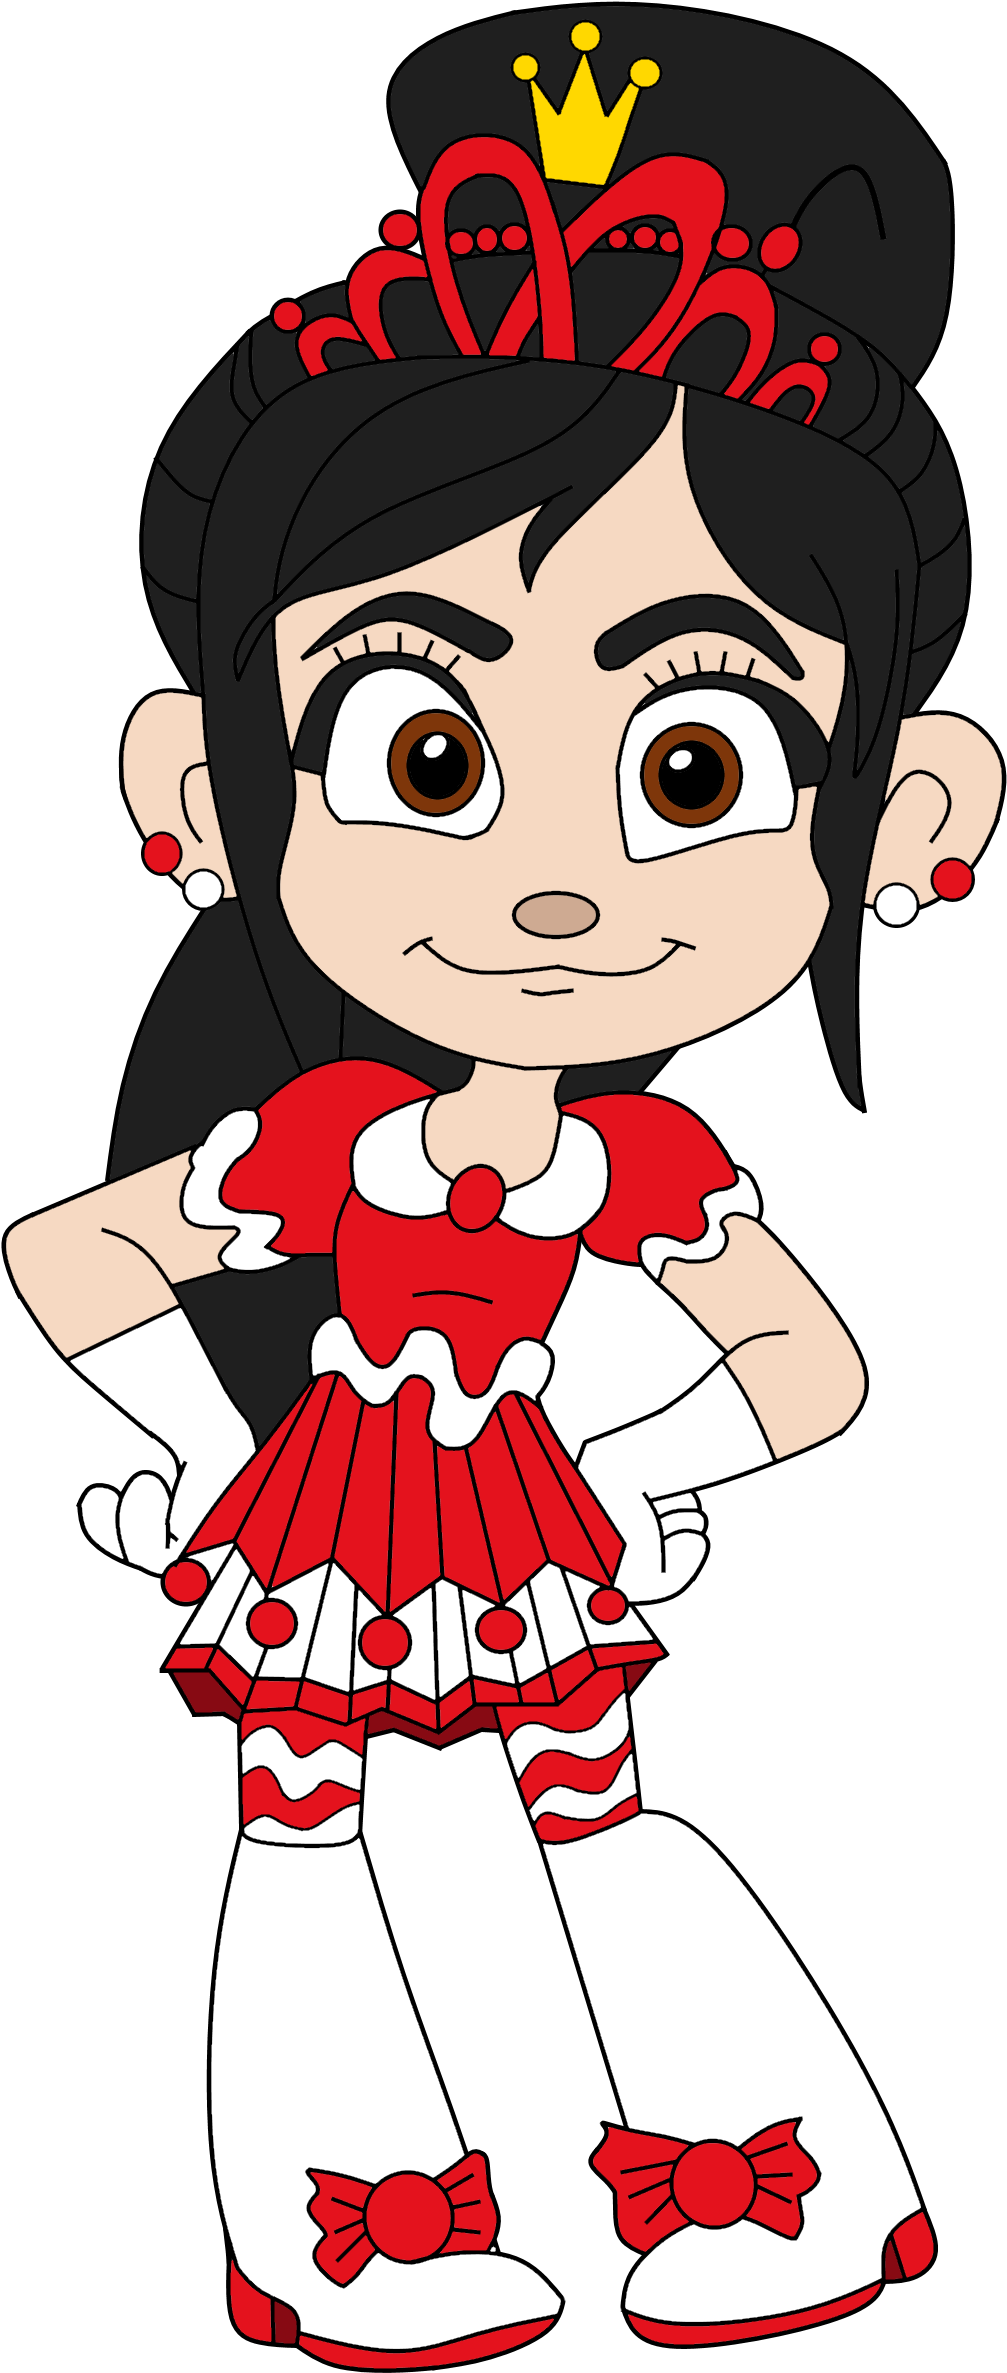 Animated Princess Character